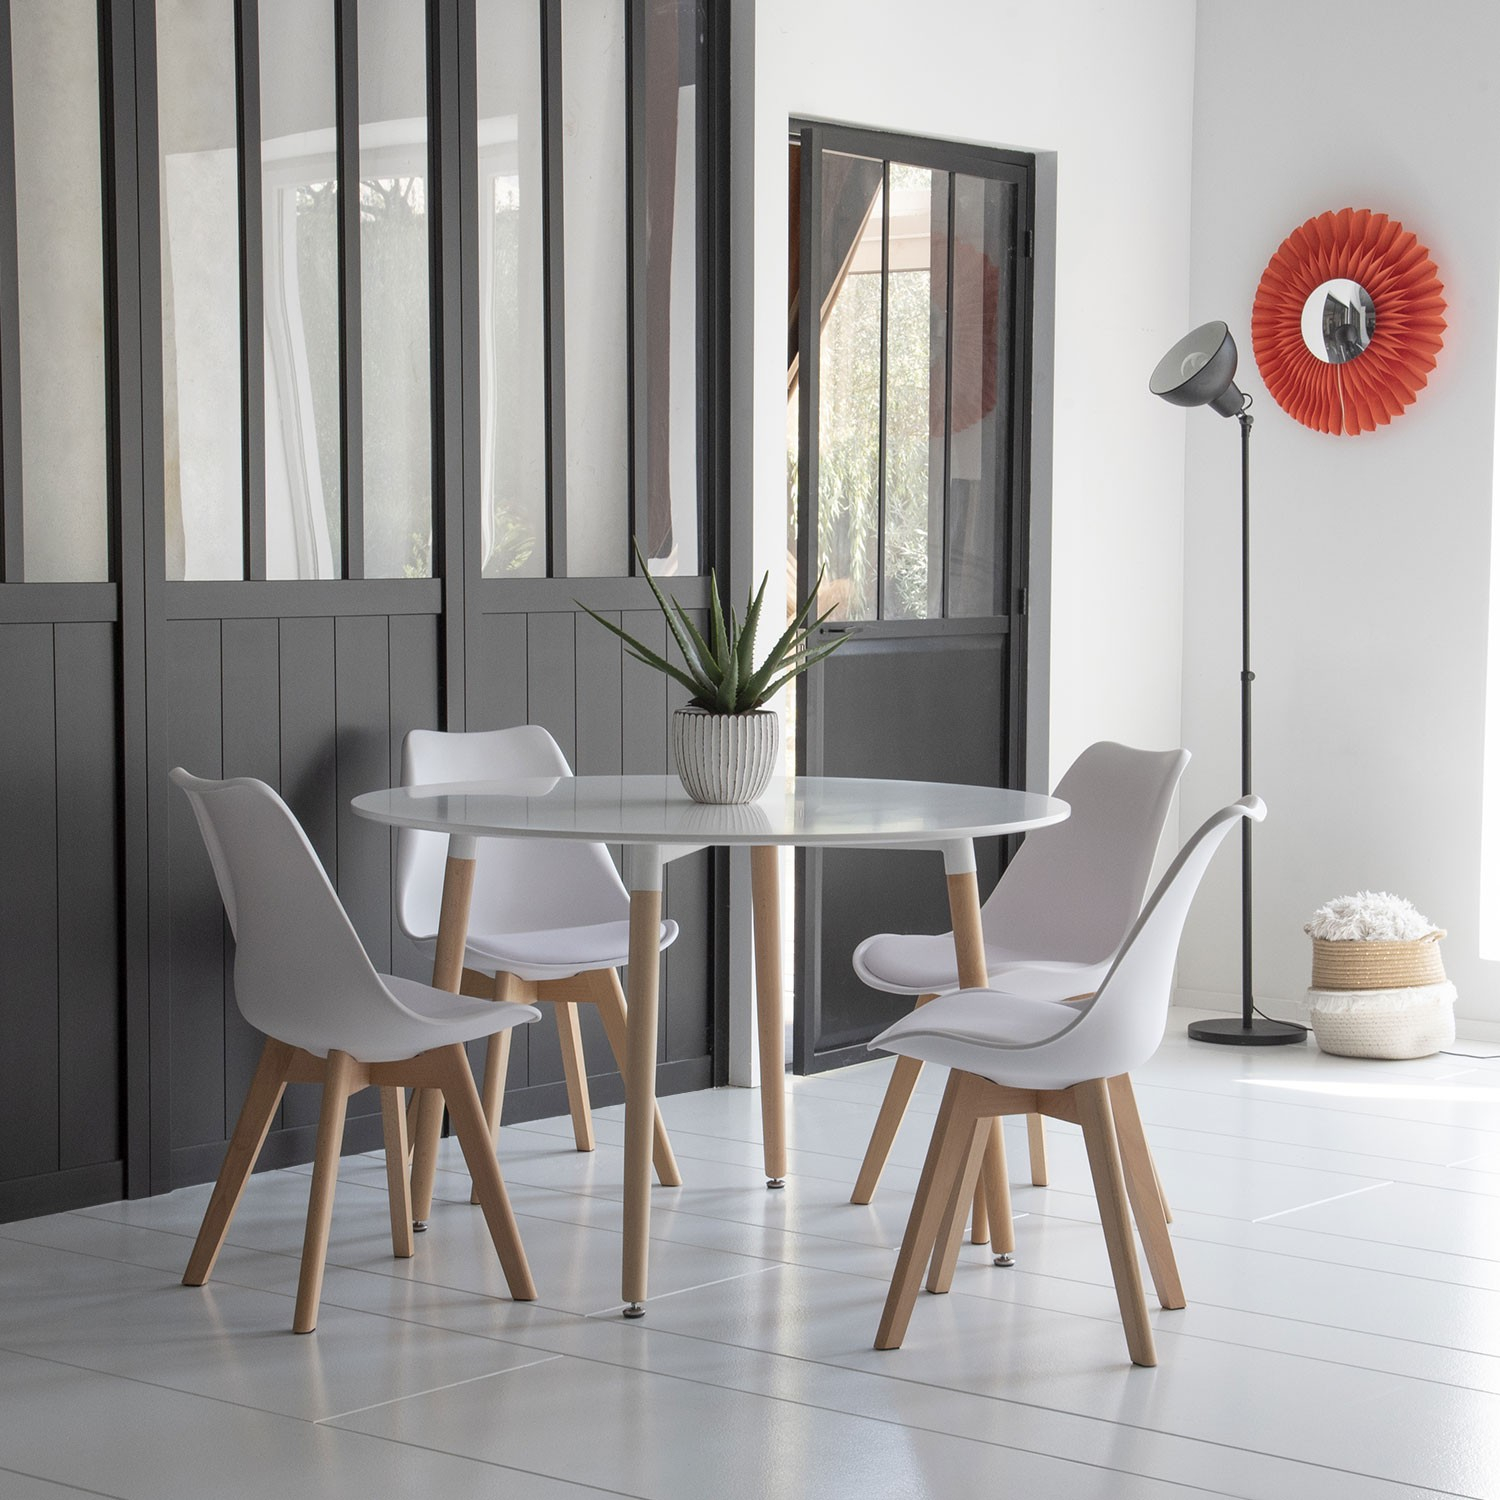 TABLE A MANGER AVEC CHAISES - 1 Table et 4 chaises pour votre salle